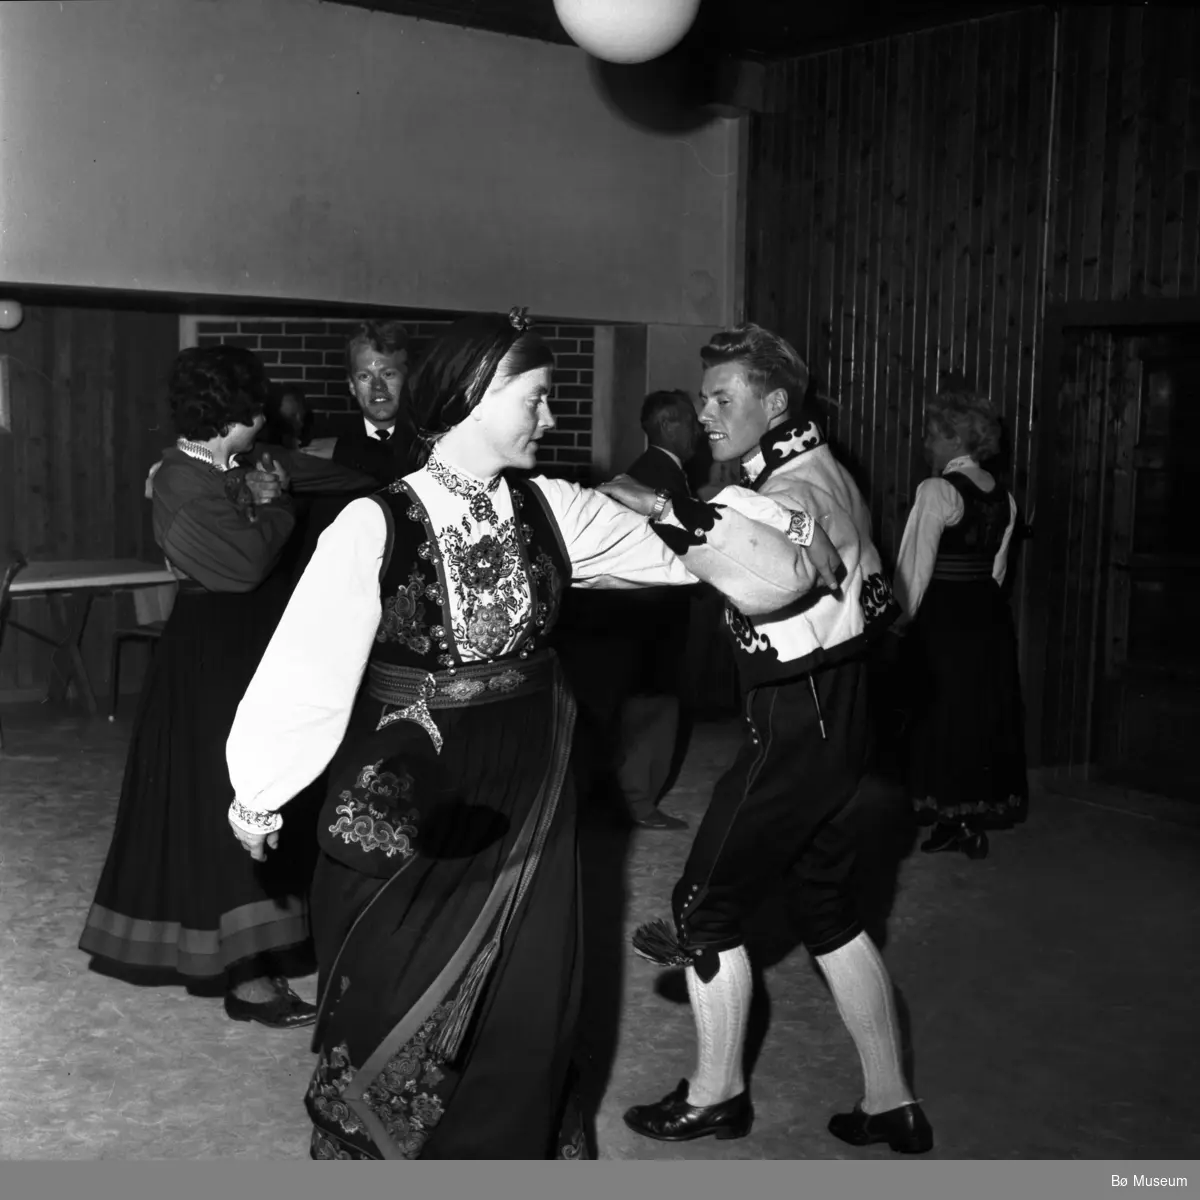 Frå ein kappleik i Bø i 1964 (ukjente dansarar)
(foto: Varden)